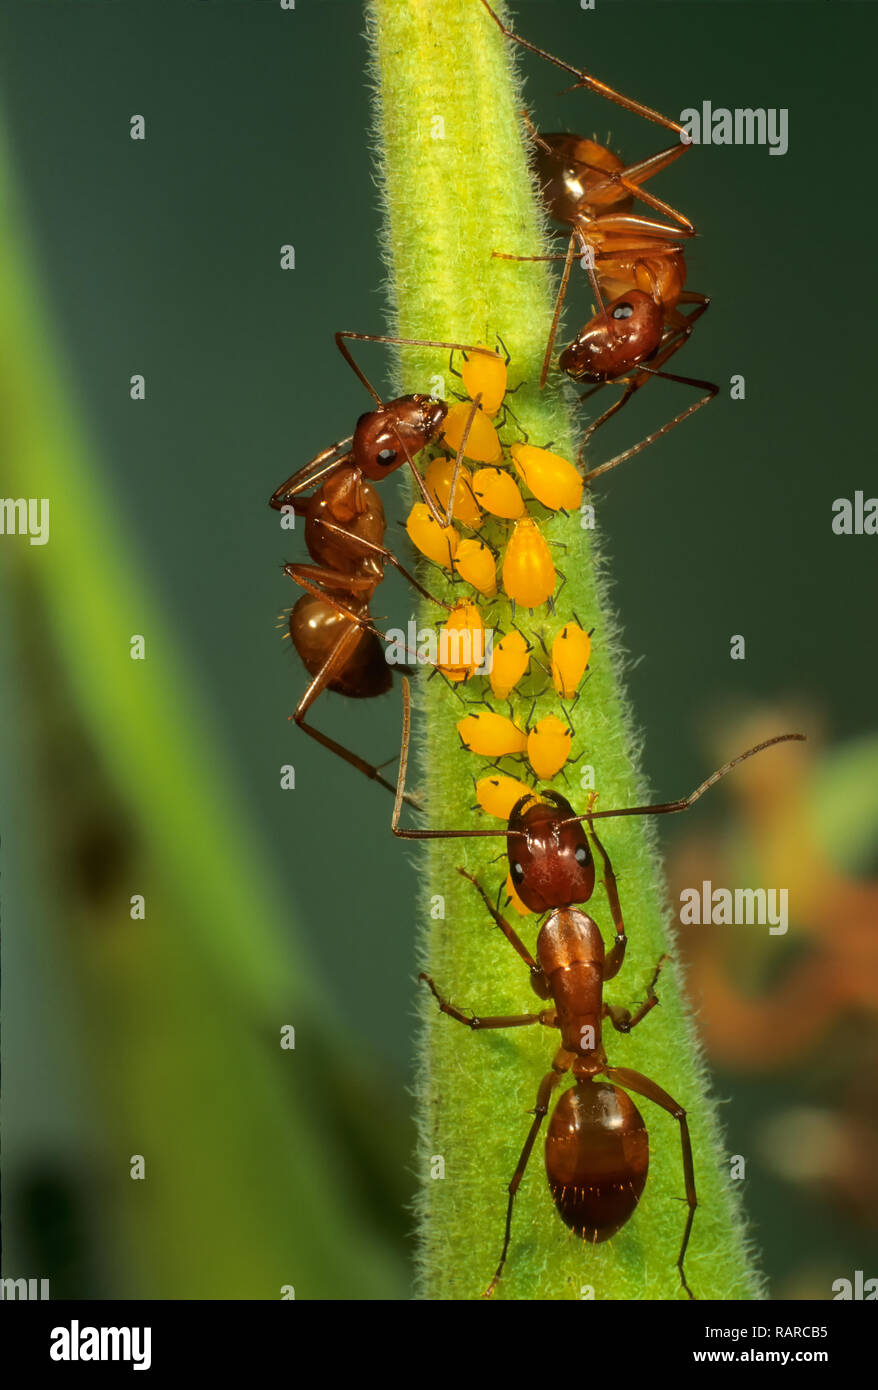 Camponotus (sp.) Ameisen Herding oleander Blattläuse auf Saatgut pod von Butterfly weed (Asclepias tuberosa). Ameisen guard Blattläuse von Raubtieren und ernähren sich von den Swe Stockfoto